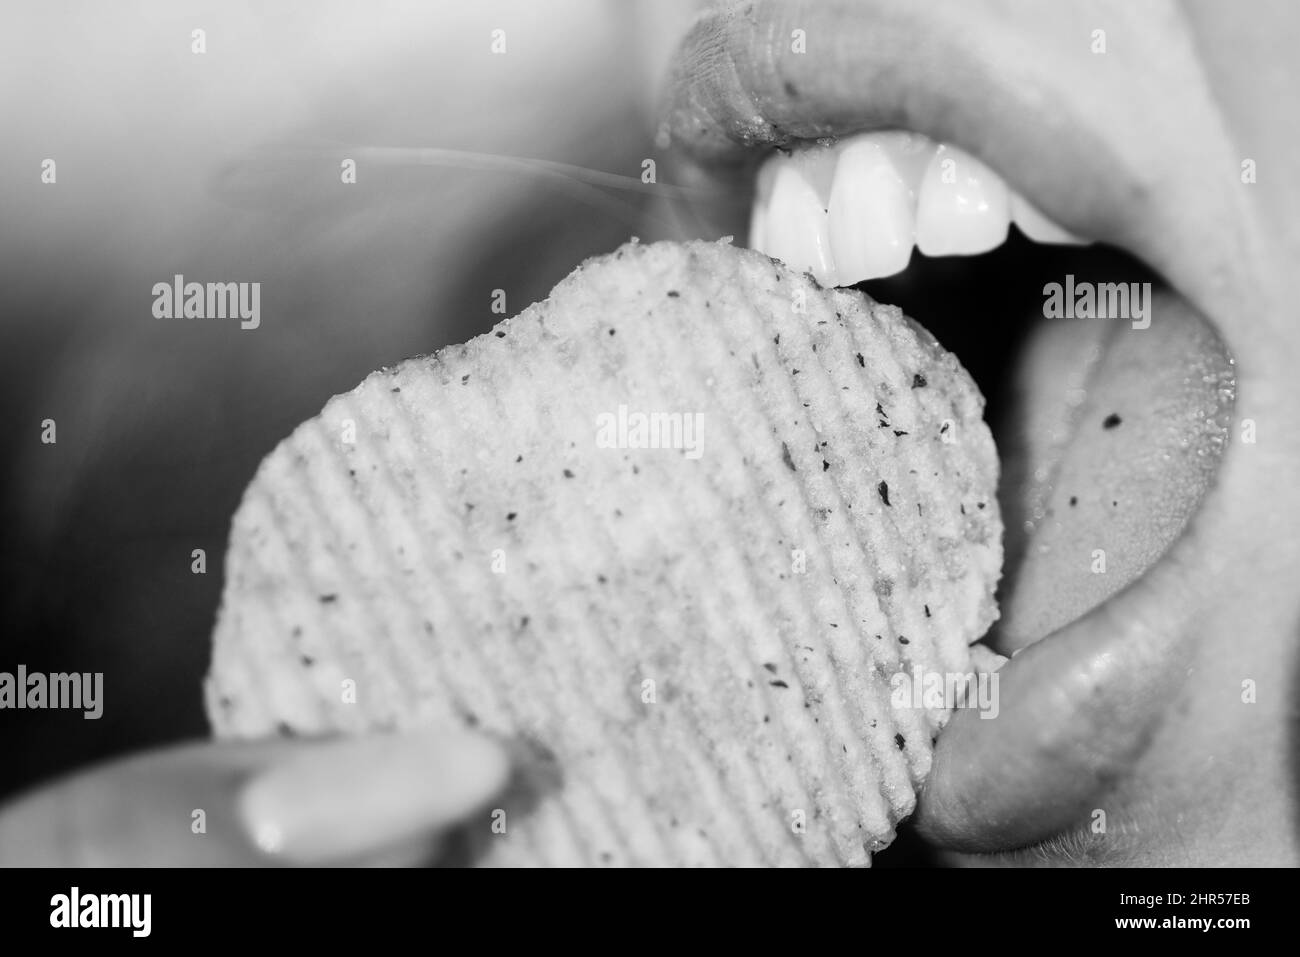 Soins dentaires. Fermer la bouche de fille avec plaisir mange des chips de pomme de terre. Banque D'Images